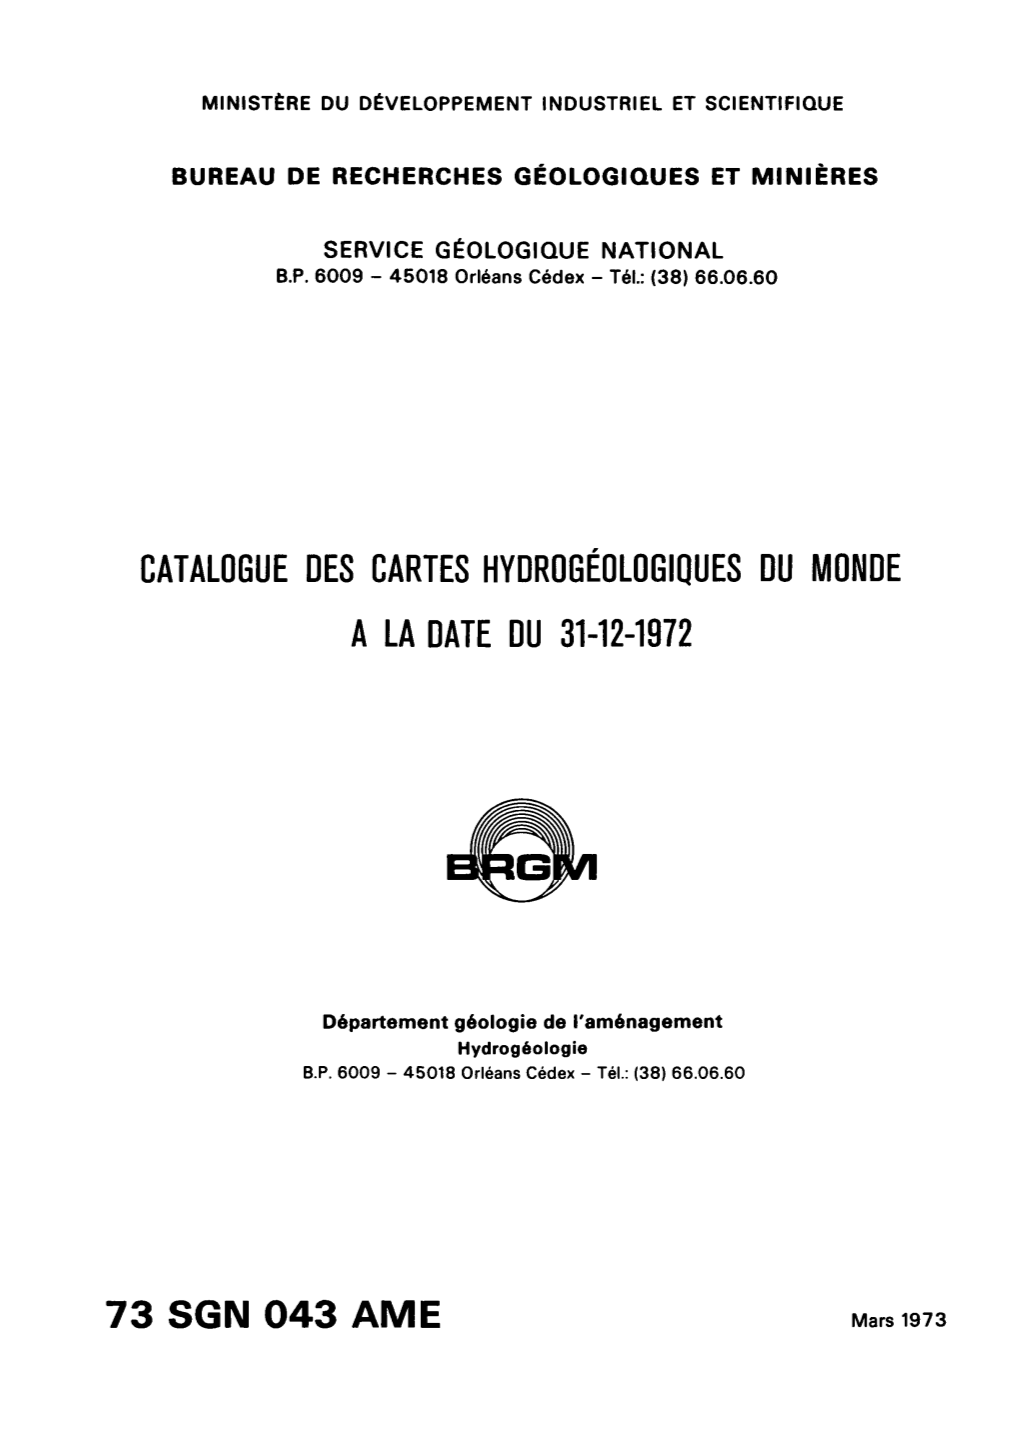 Catalogue Des Cartes Hydrogéologiques Du Monde a La Date Du 31-12-1972